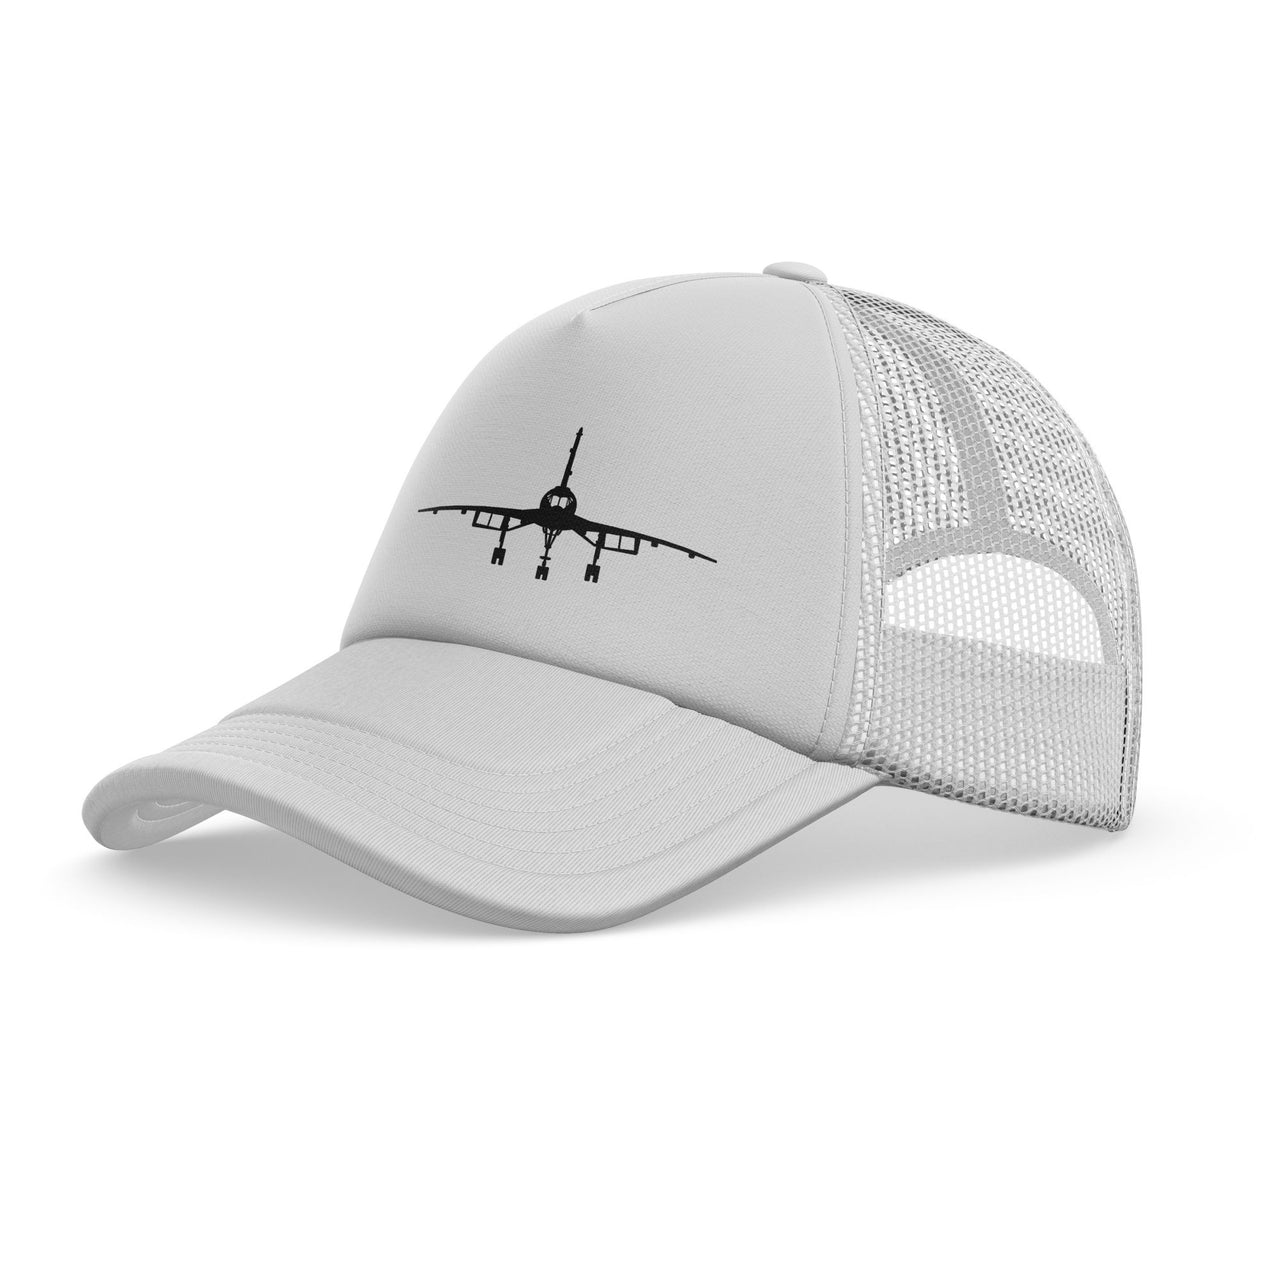 Concorde Silhouette Designed Trucker Caps & Hats